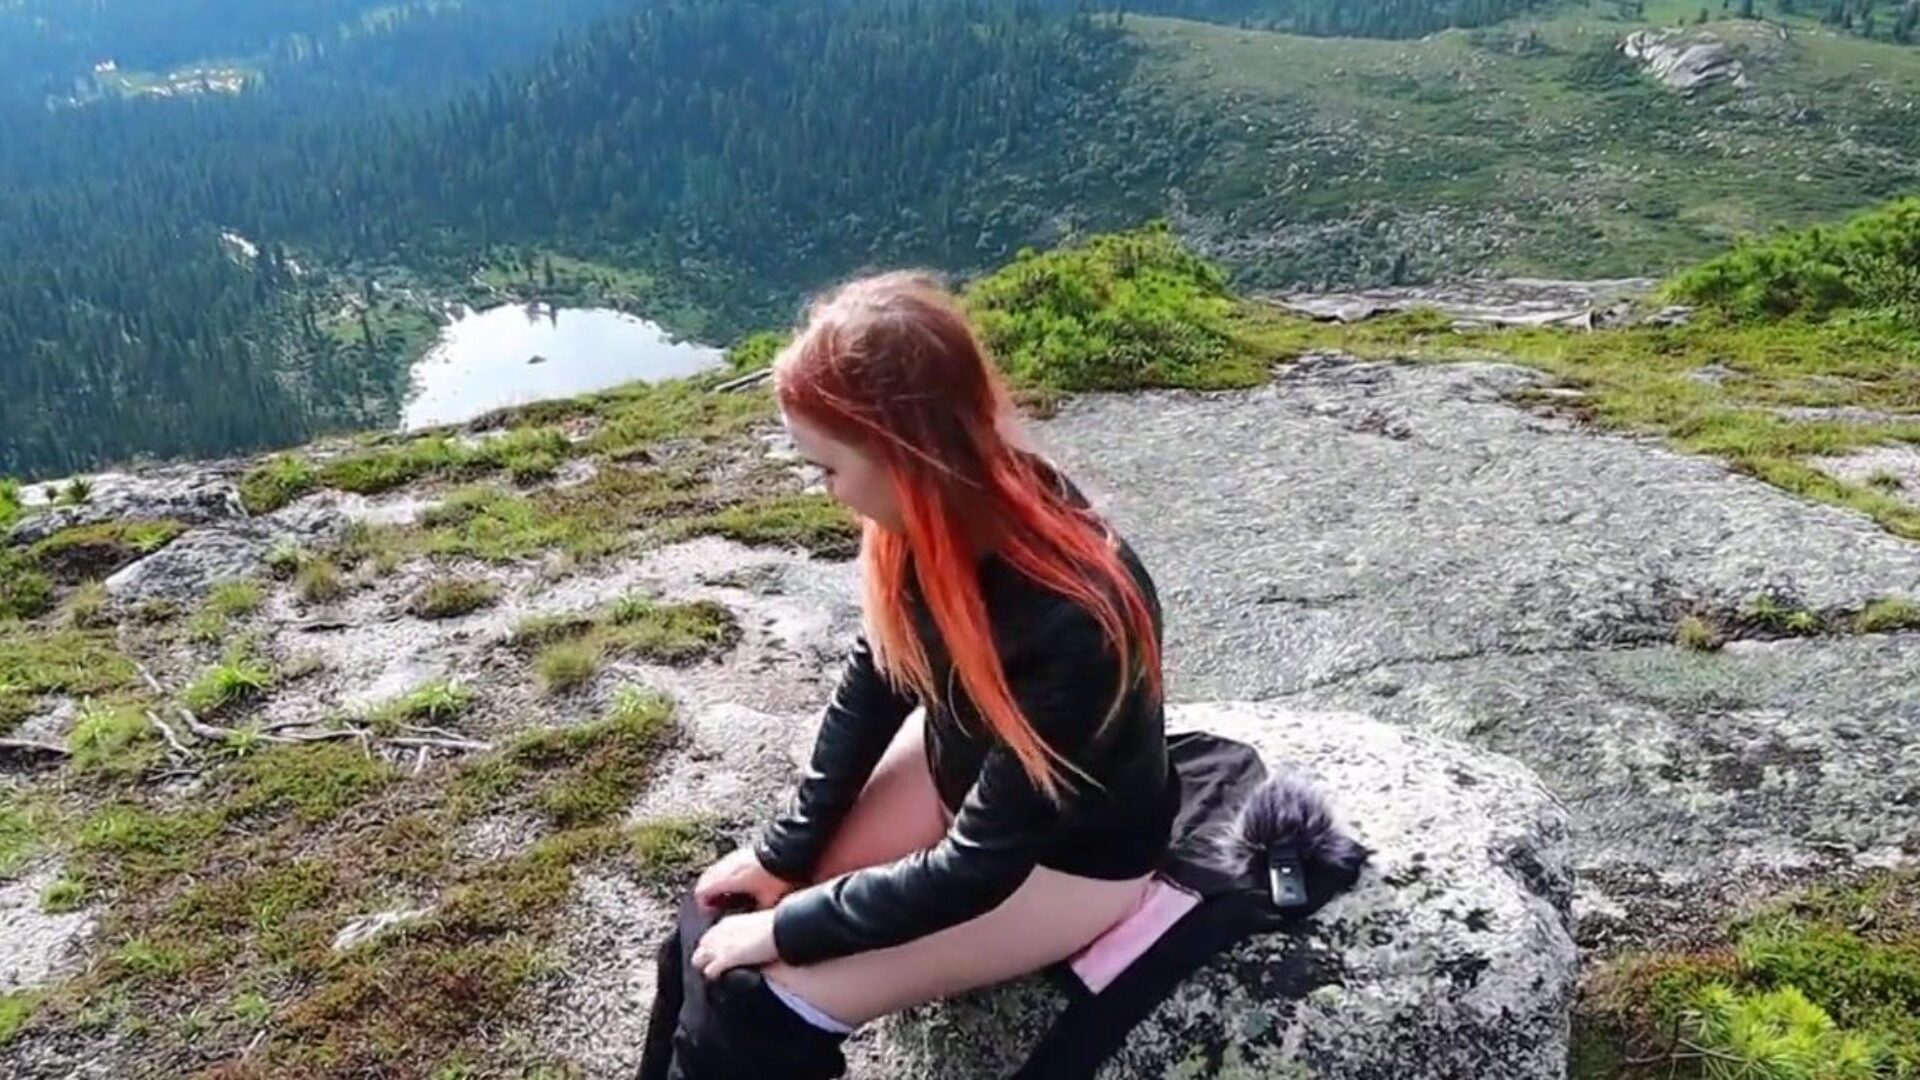 κορίτσι αποφάσισε να χαλαρώσει, αυνανίστηκε το μουνί της και να αποκτήσει έναν οργασμό ψηλά στα βουνά!